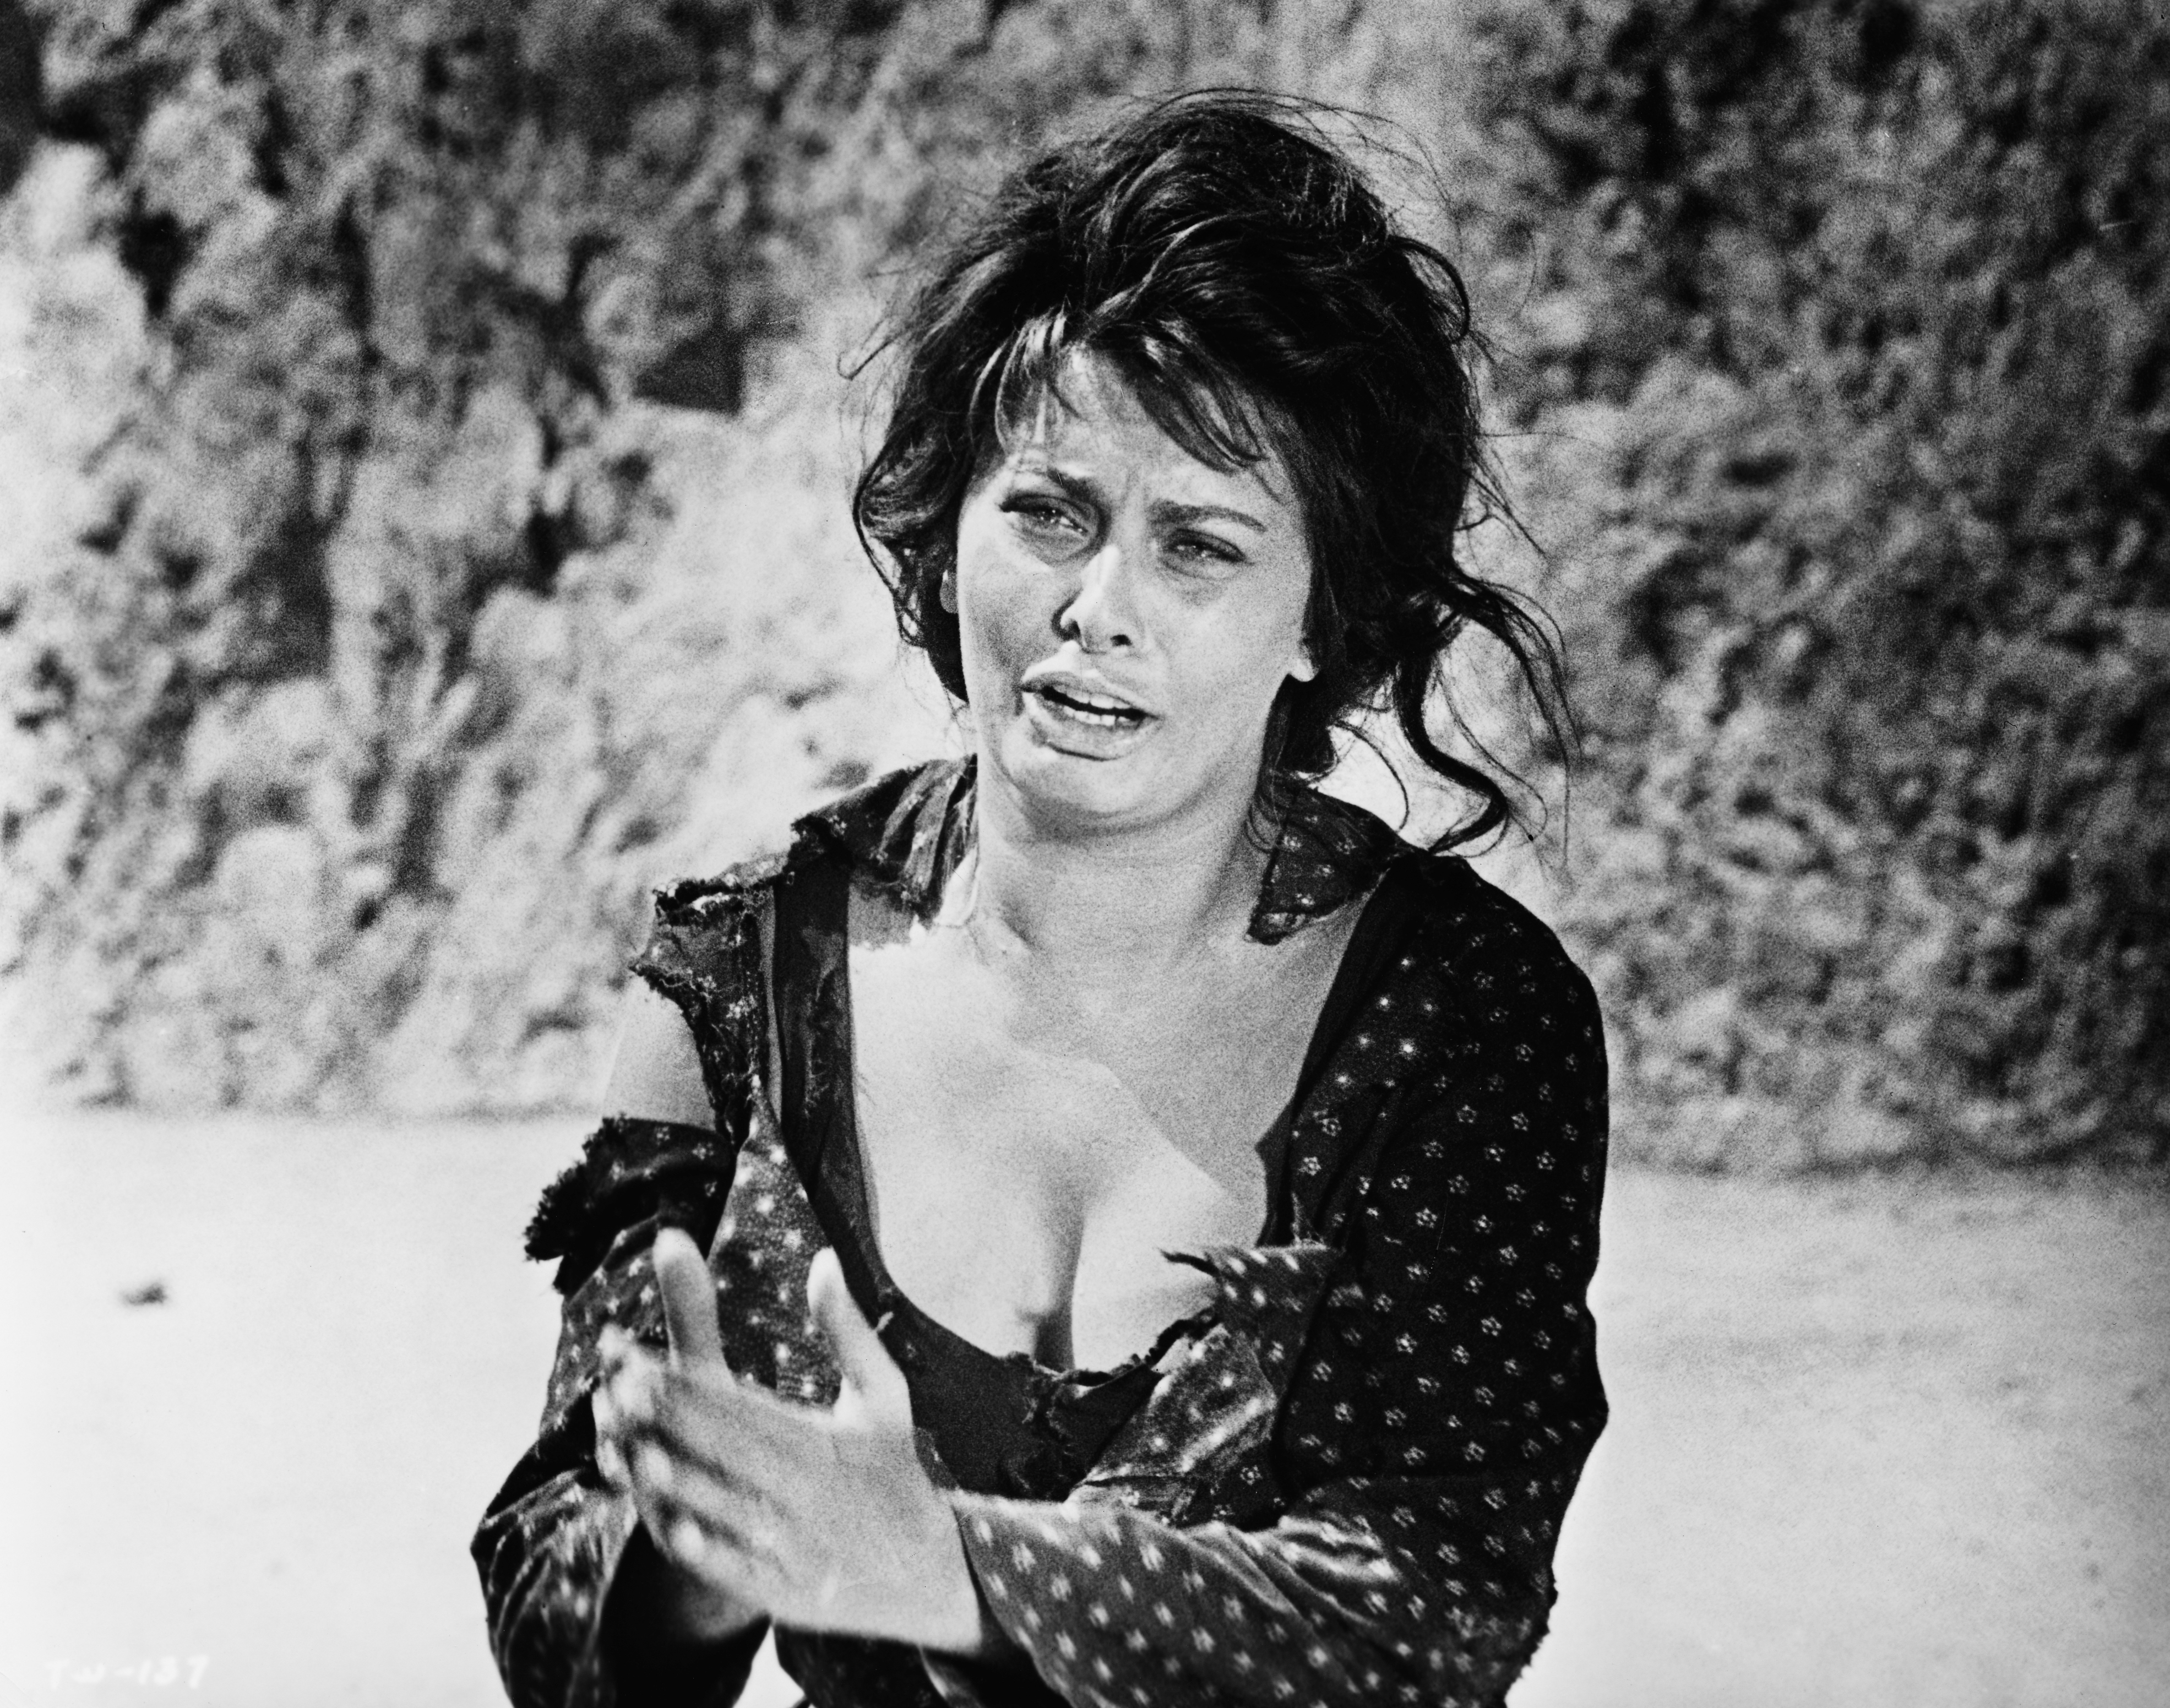 Sophia Loren sur le plateau de tournage de "La Paysanne aux pieds nus" sorti en 1961 | Source : Getty Images